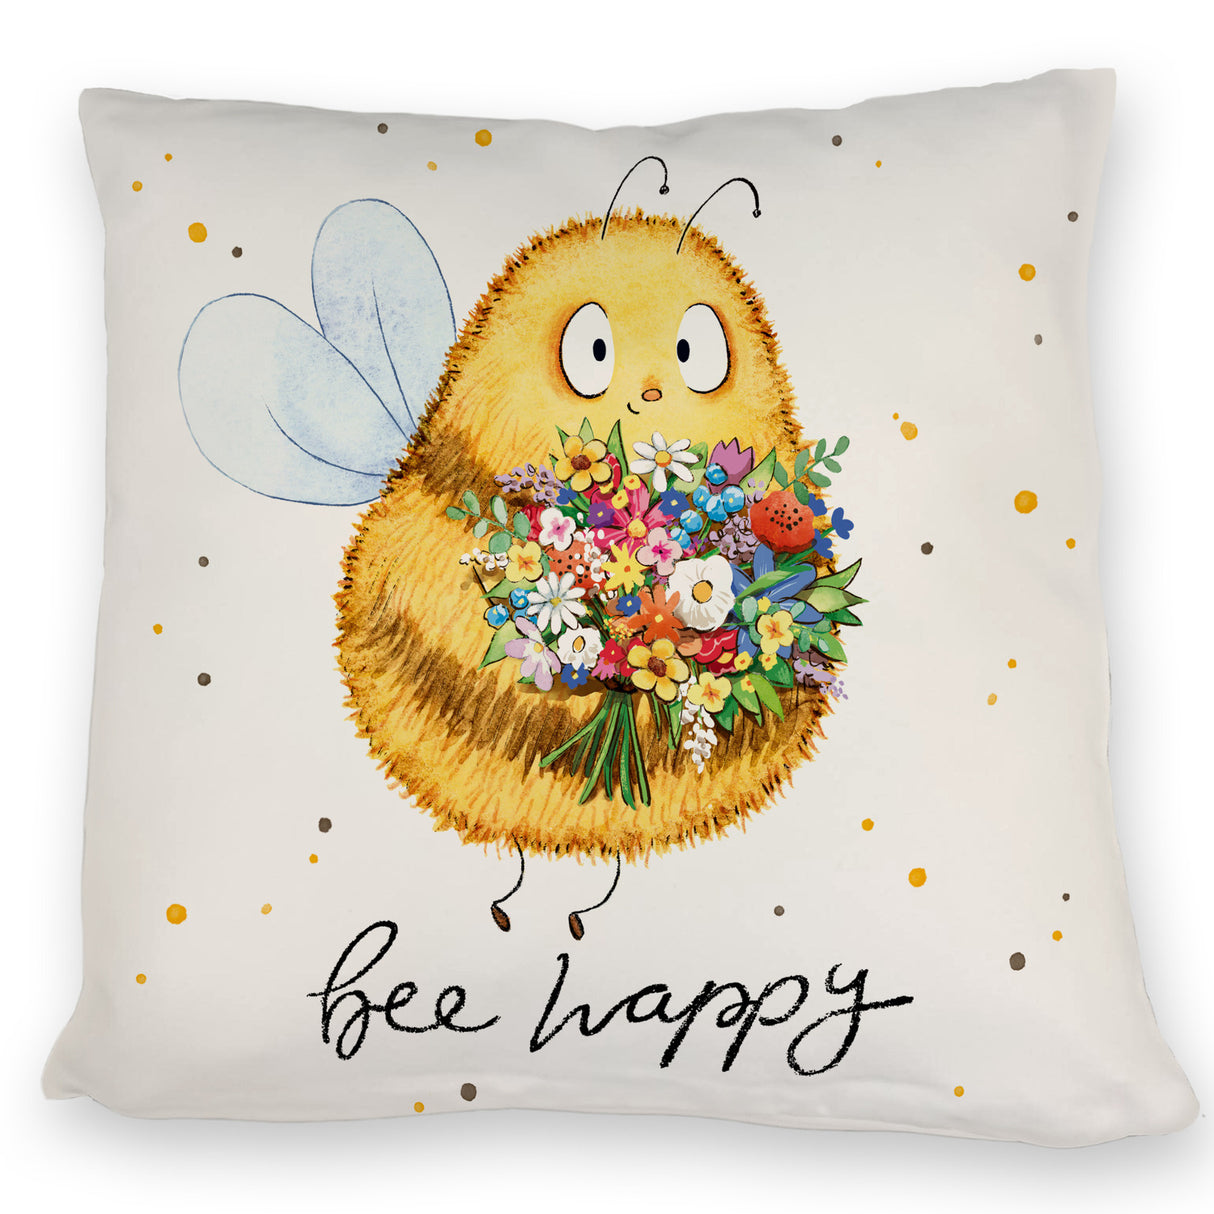 Pummel Biene Kissen mit Spruch Bee happy